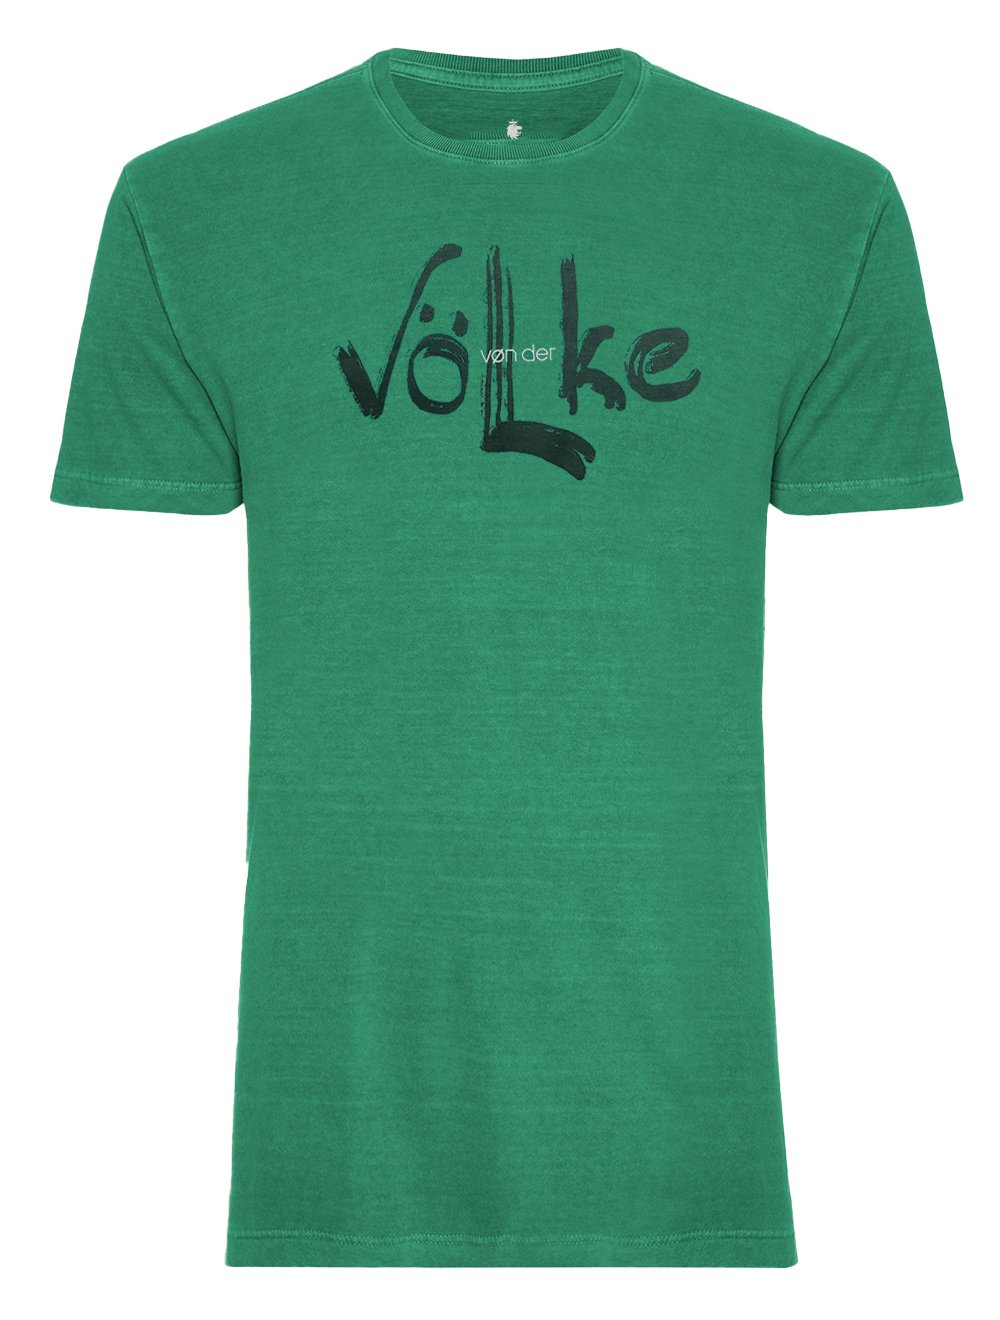 Camiseta Von der Volke Masculina Origineel Hand Volke Verde